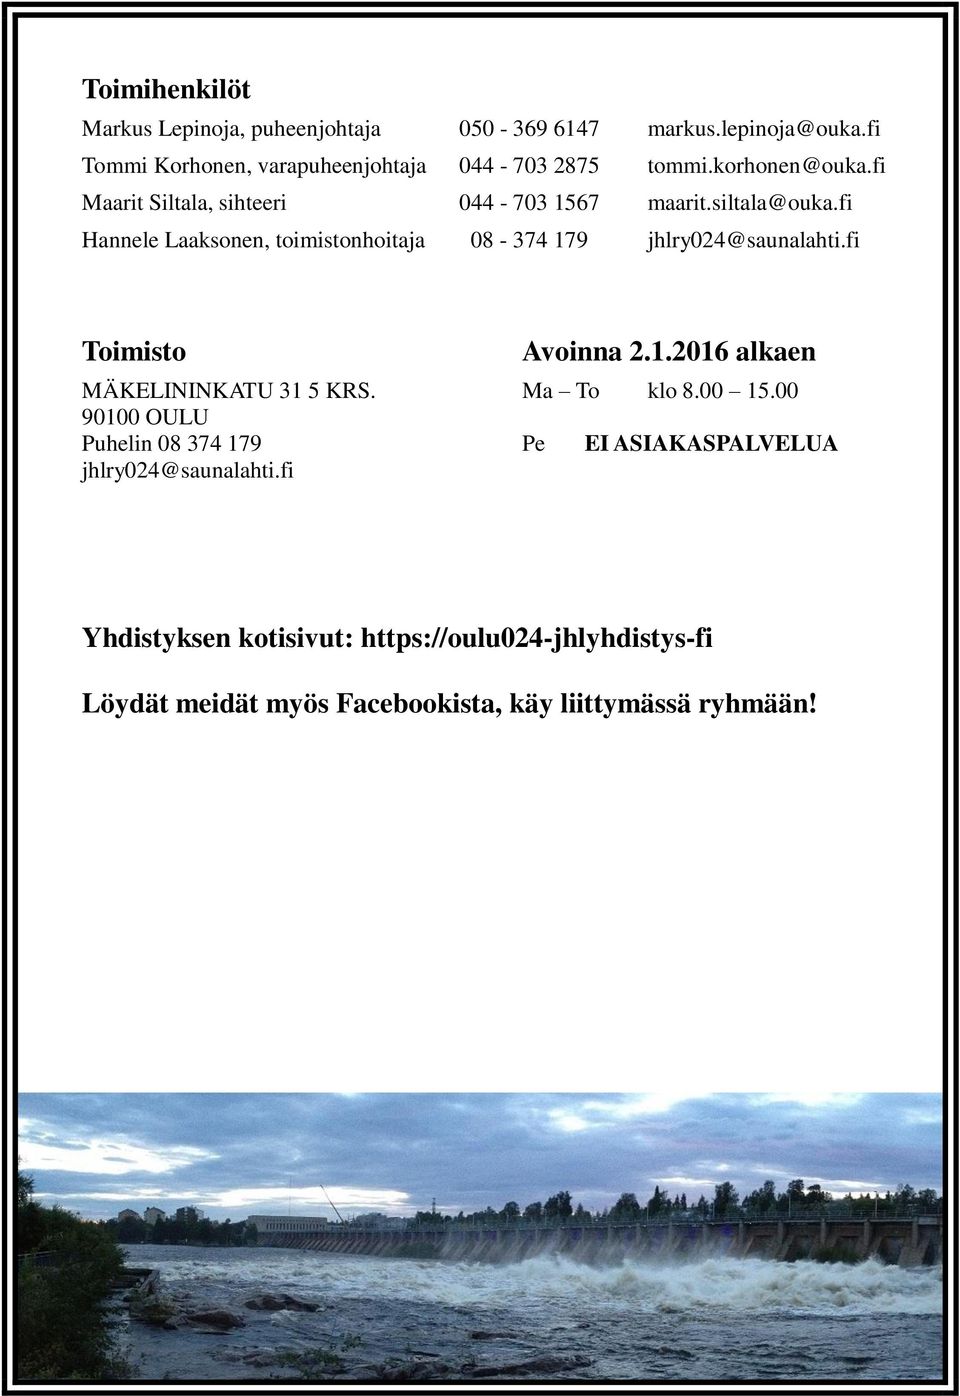 fi Hannele Laaksonen, toimistonhoitaja 08-374 179 jhlry024@saunalahti.fi Toimisto Avoinna 2.1.2016 alkaen MÄKELININKATU 31 5 KRS.